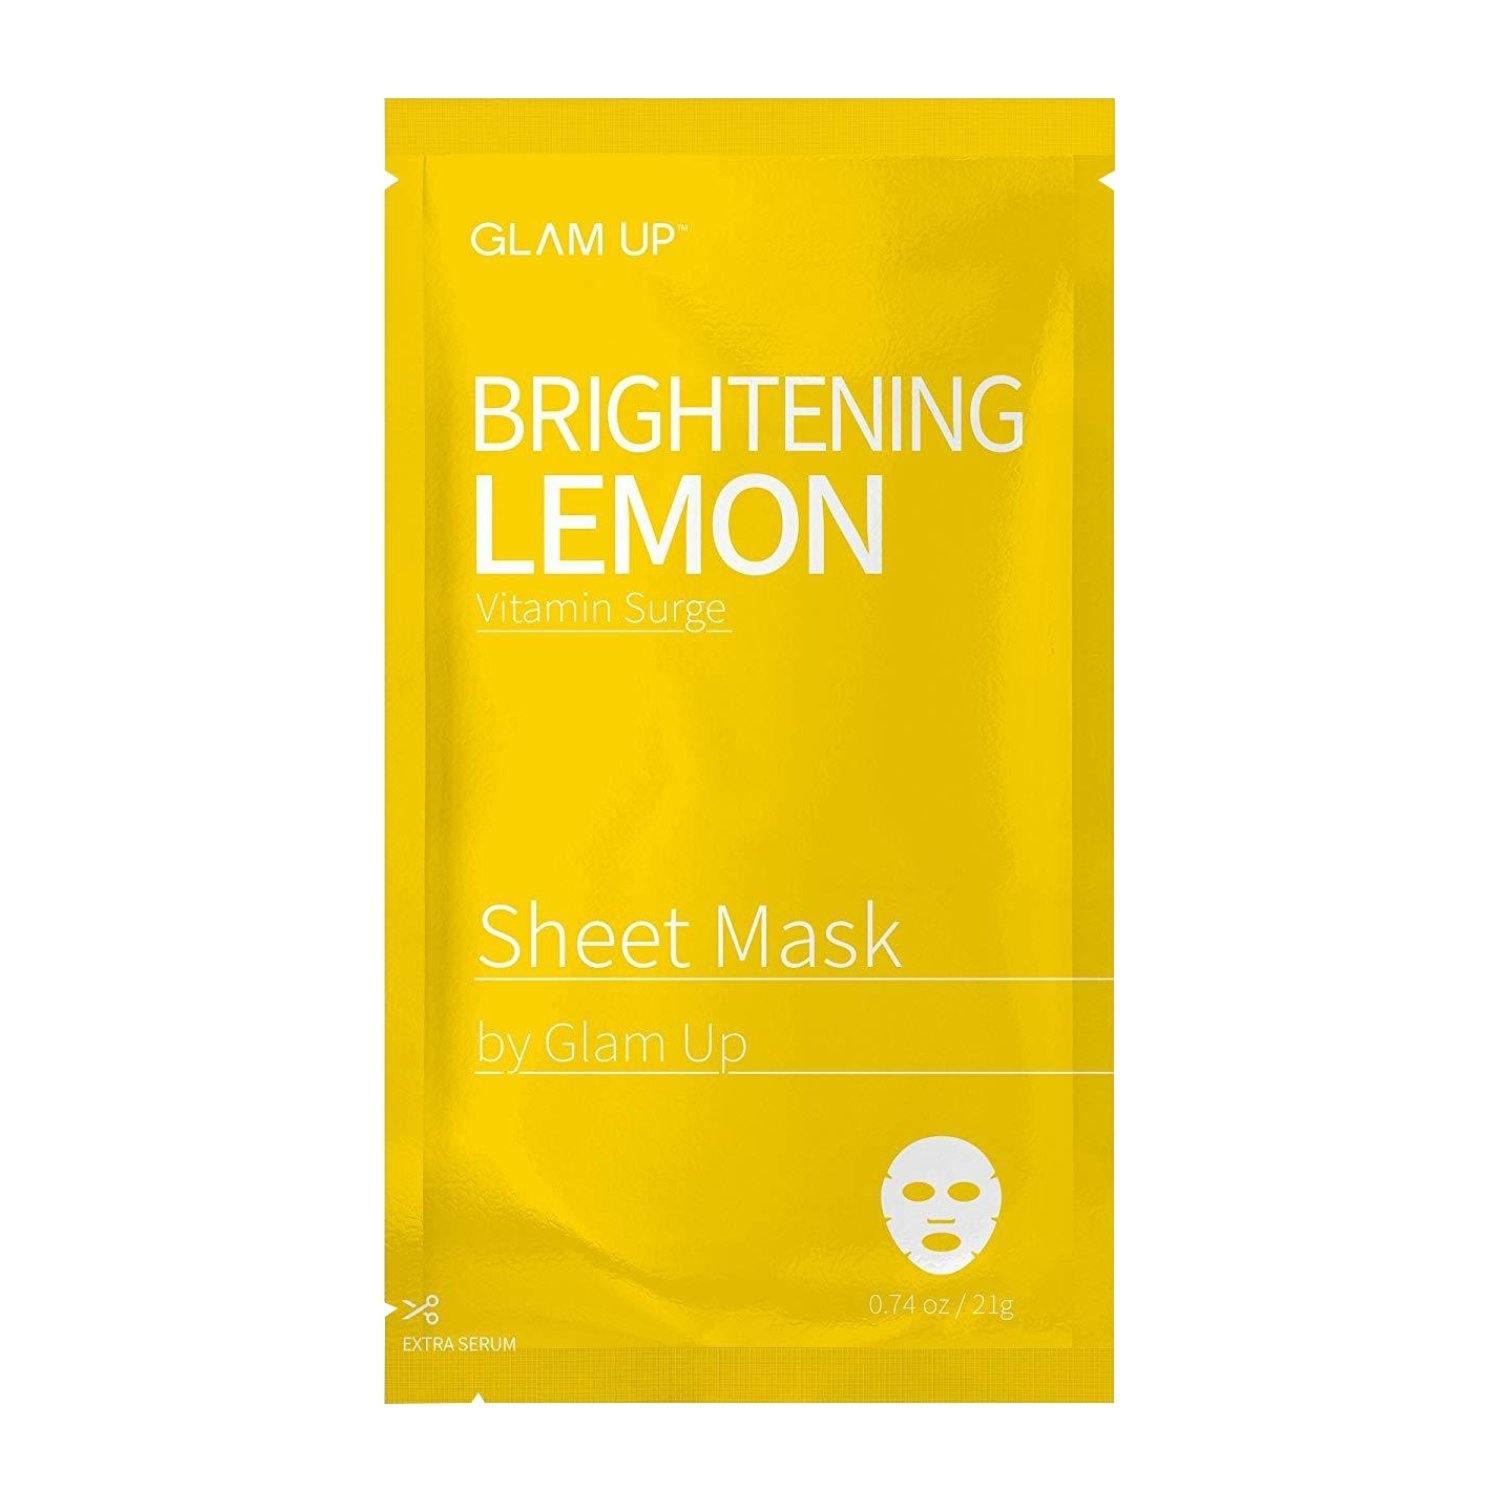 Brightening Lemon Sheet Mask